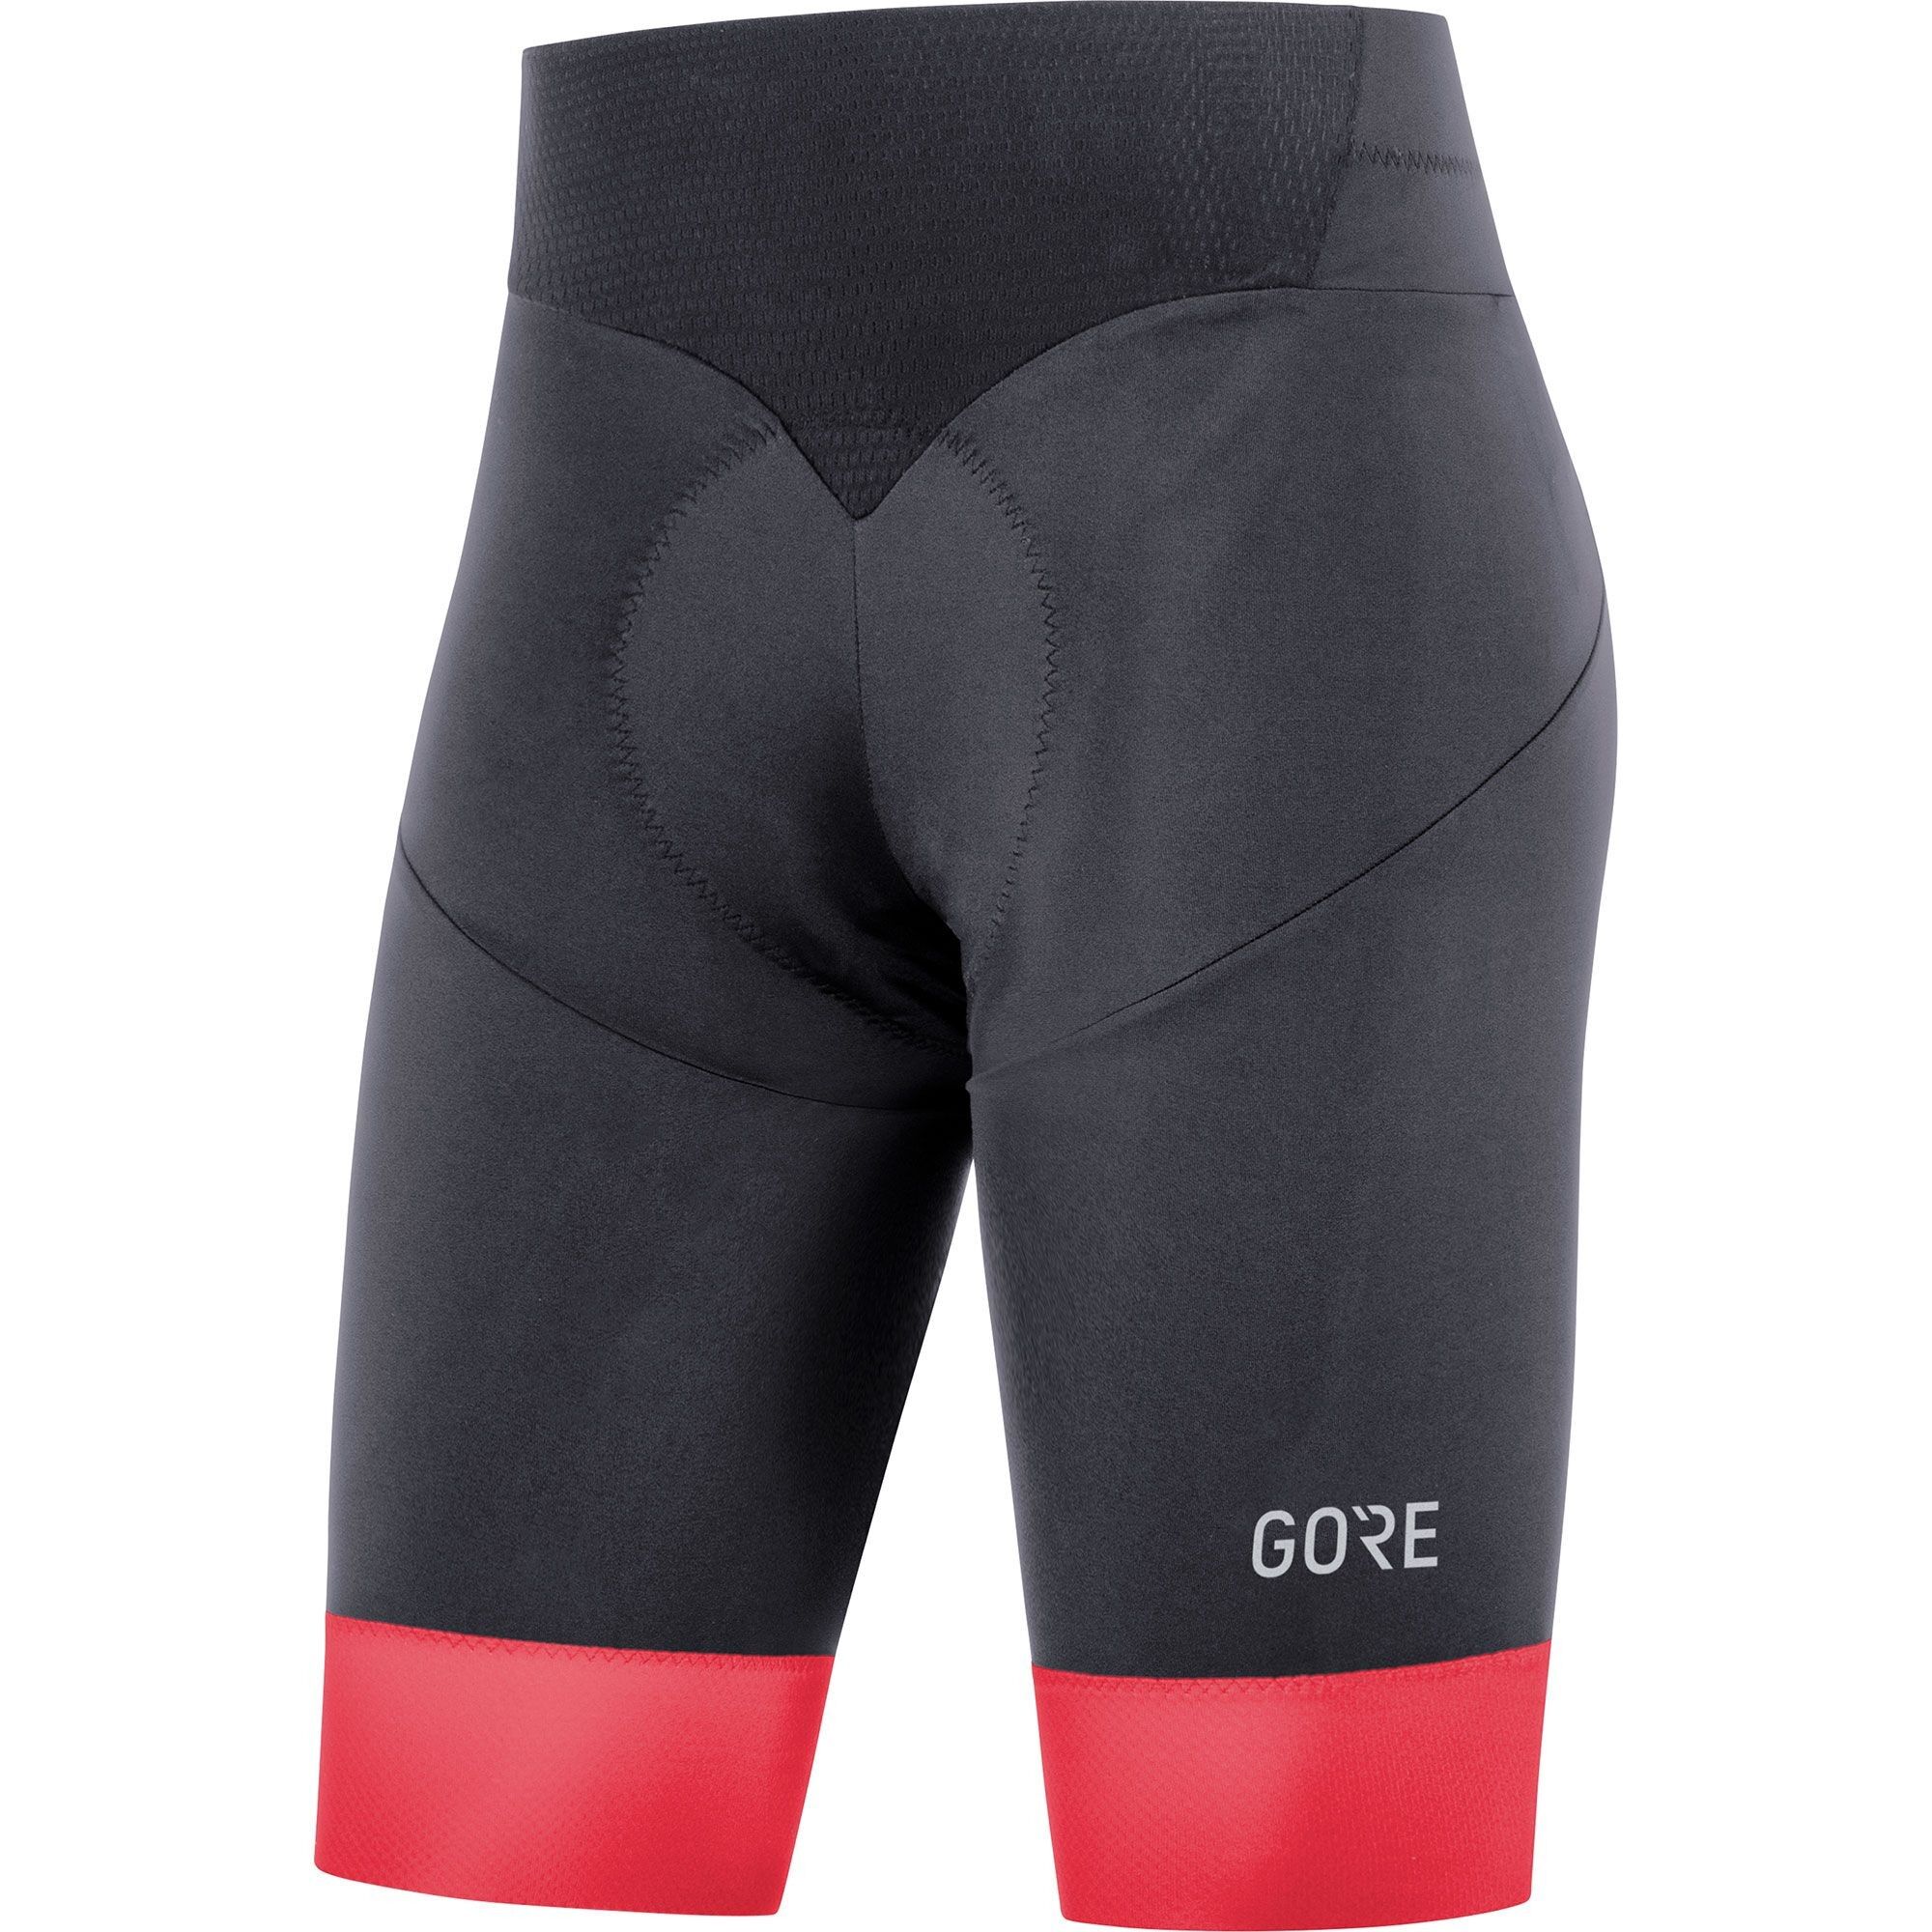 Gore Wear C5 Short Tights+ - Cycling shorts - Women's